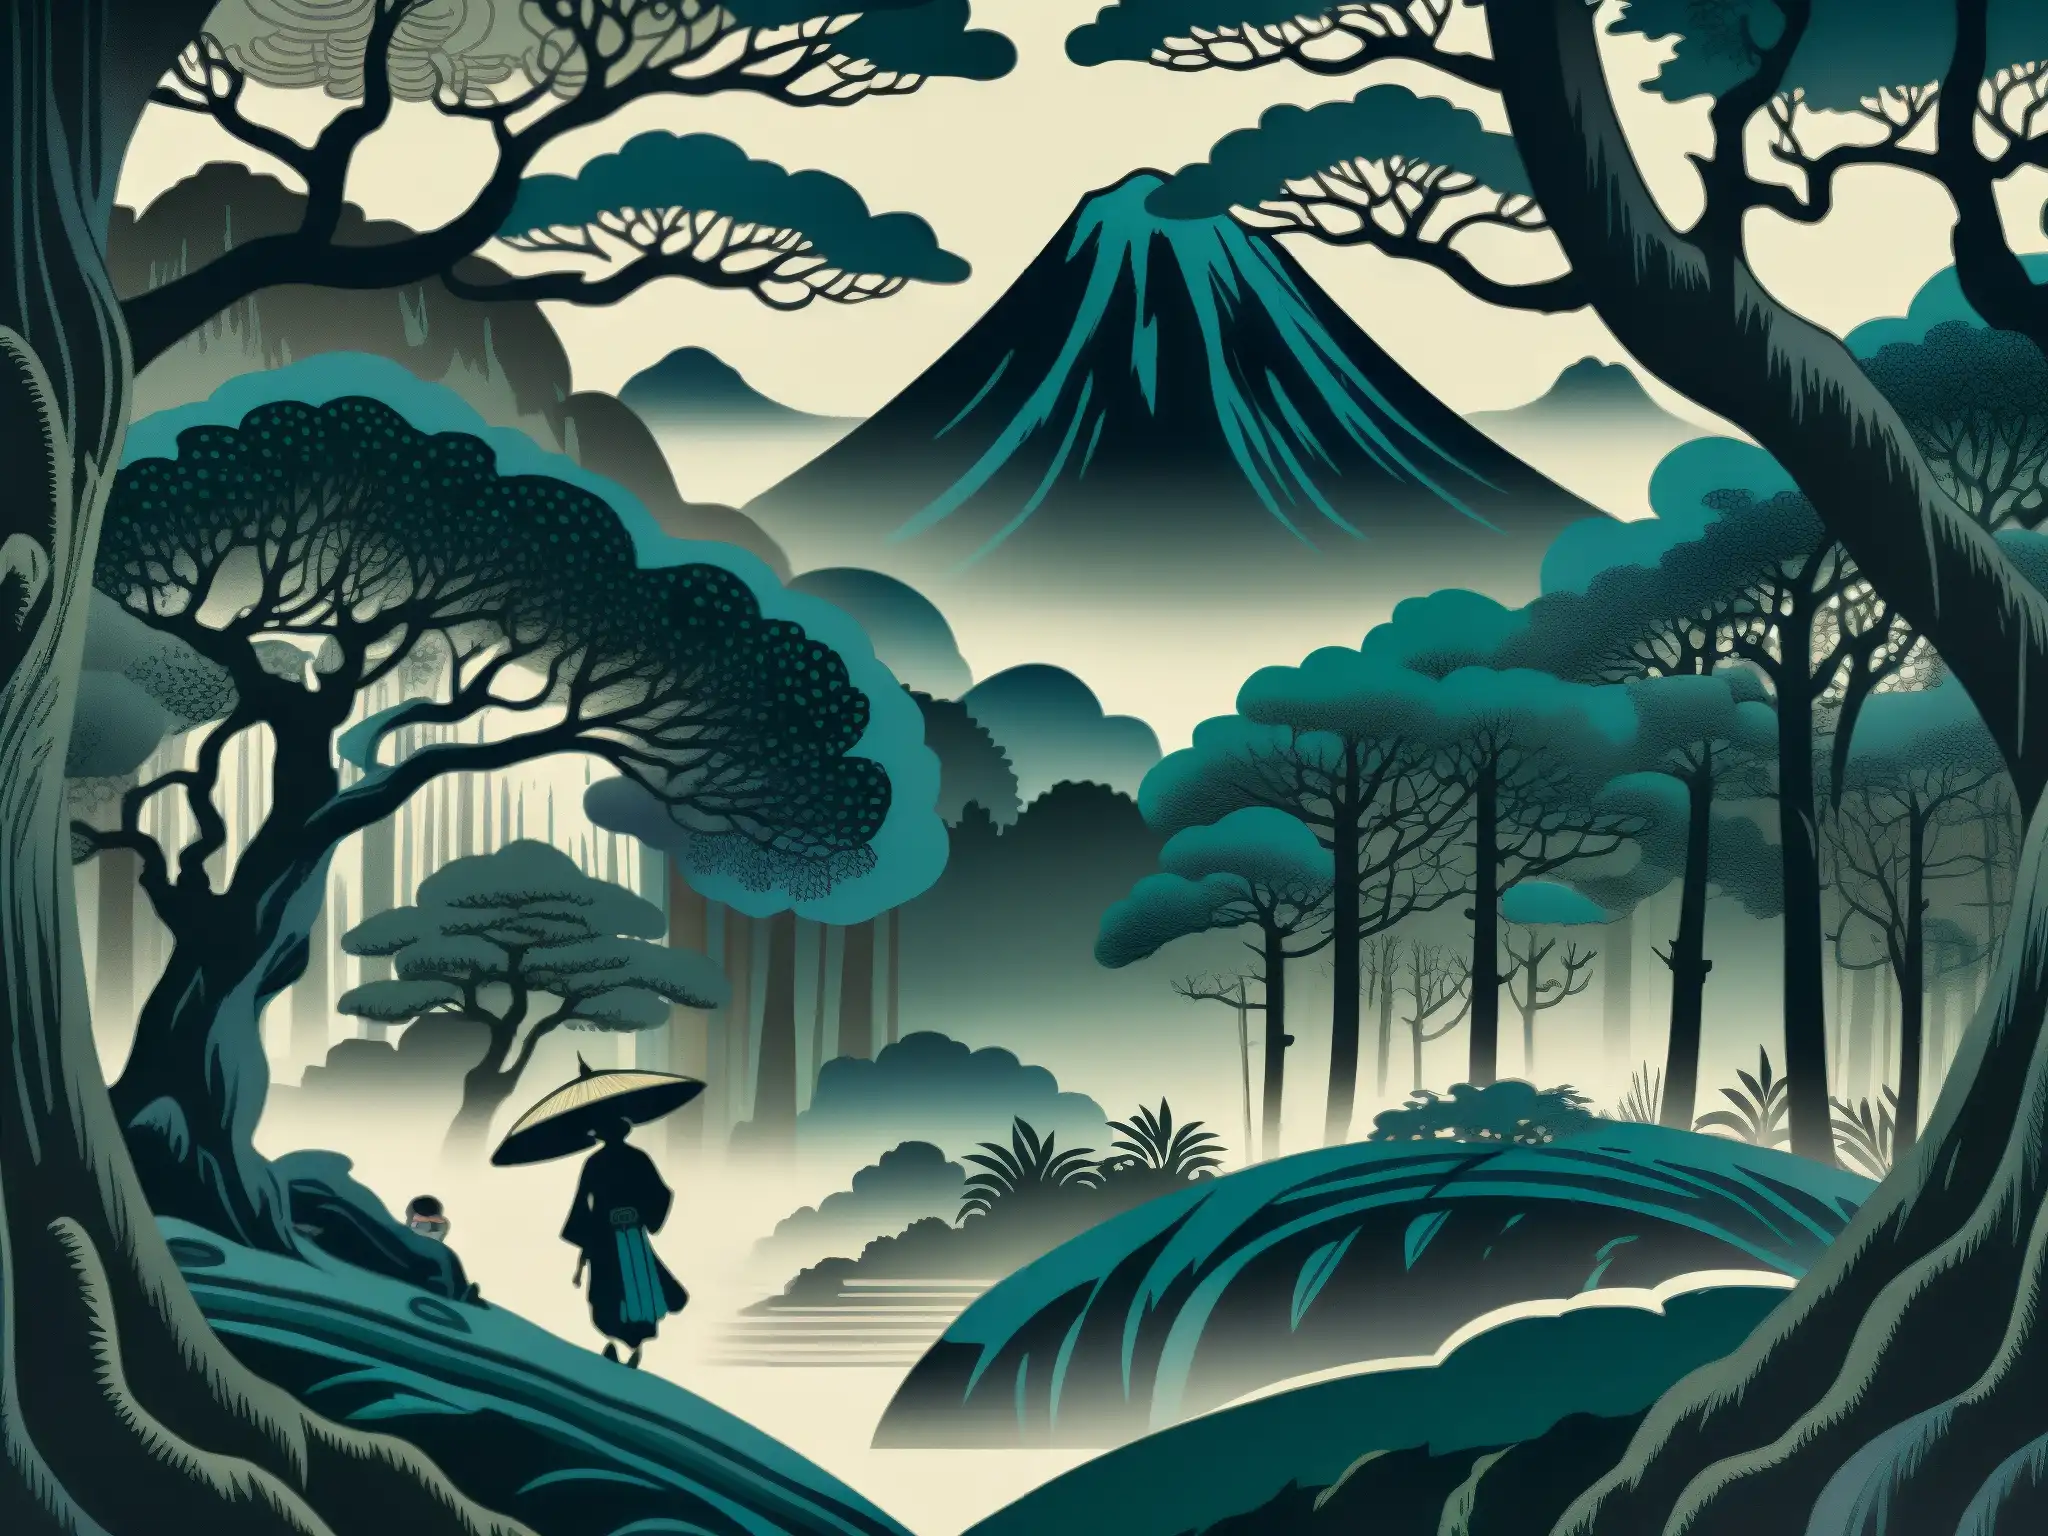 Un grabado detallado de un yokai en un bosque oscuro y neblinoso